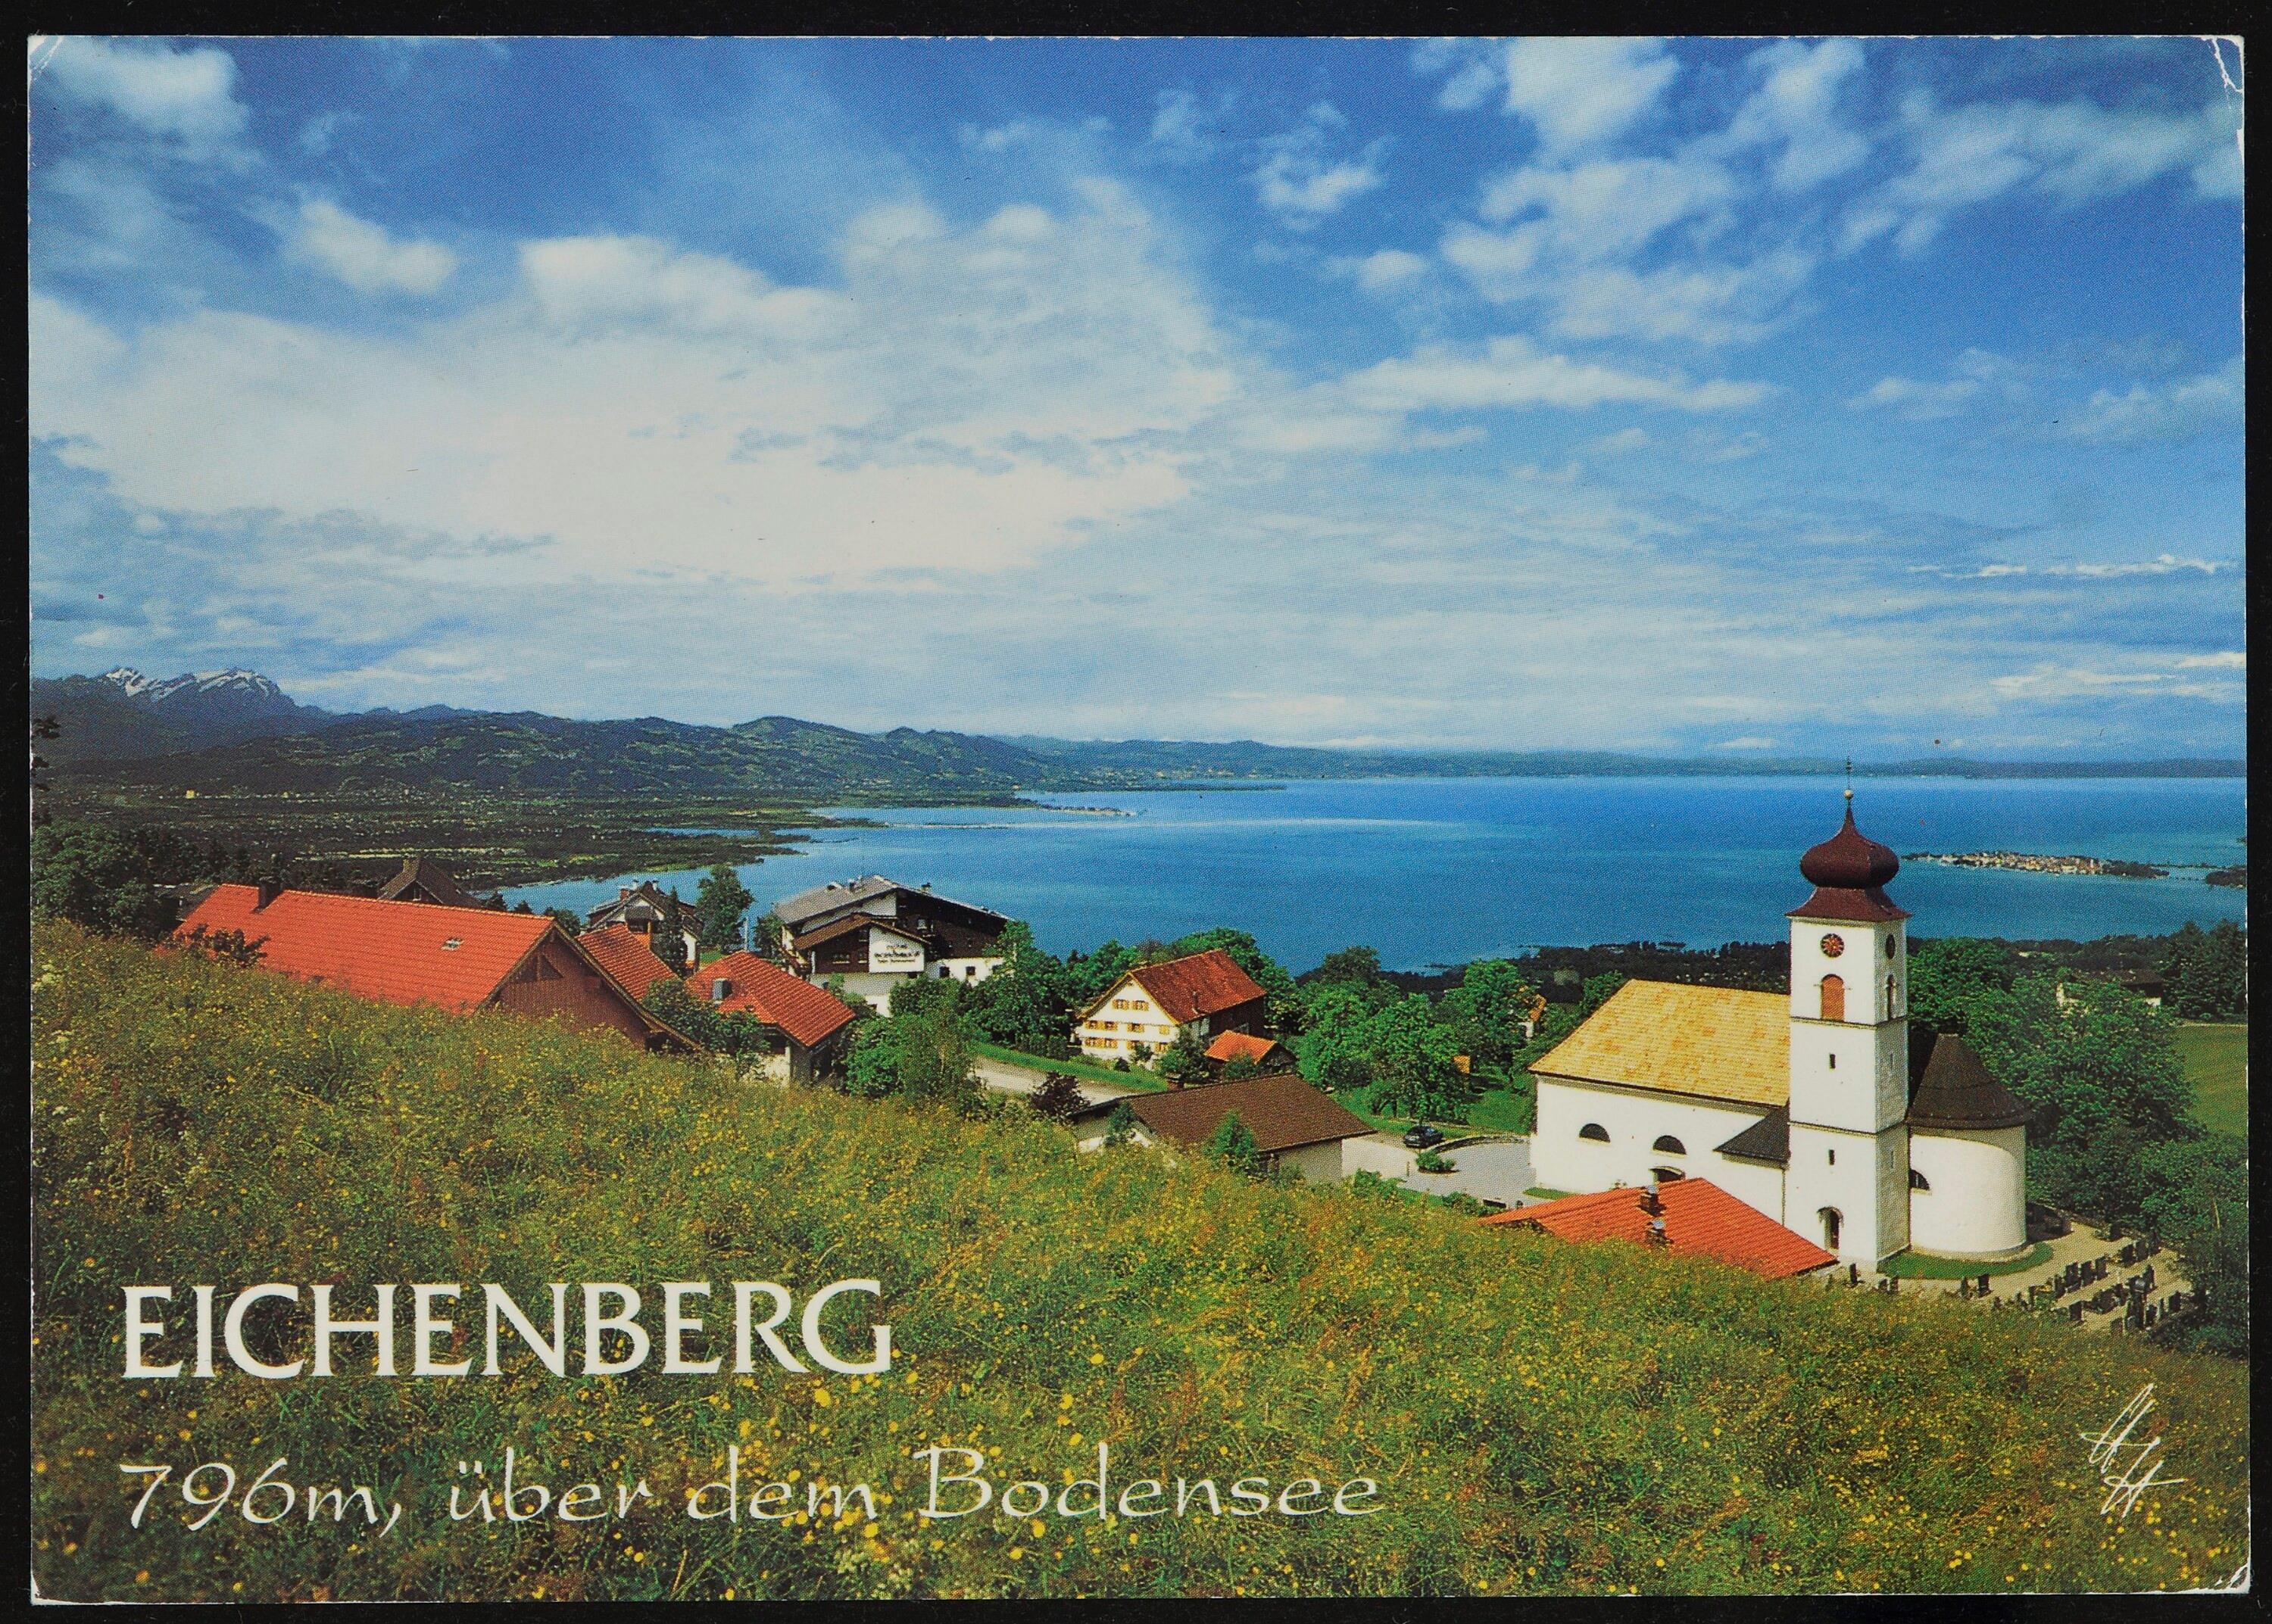 Eichenberg 796 m, über dem Bodensee></div>


    <hr>
    <div class=